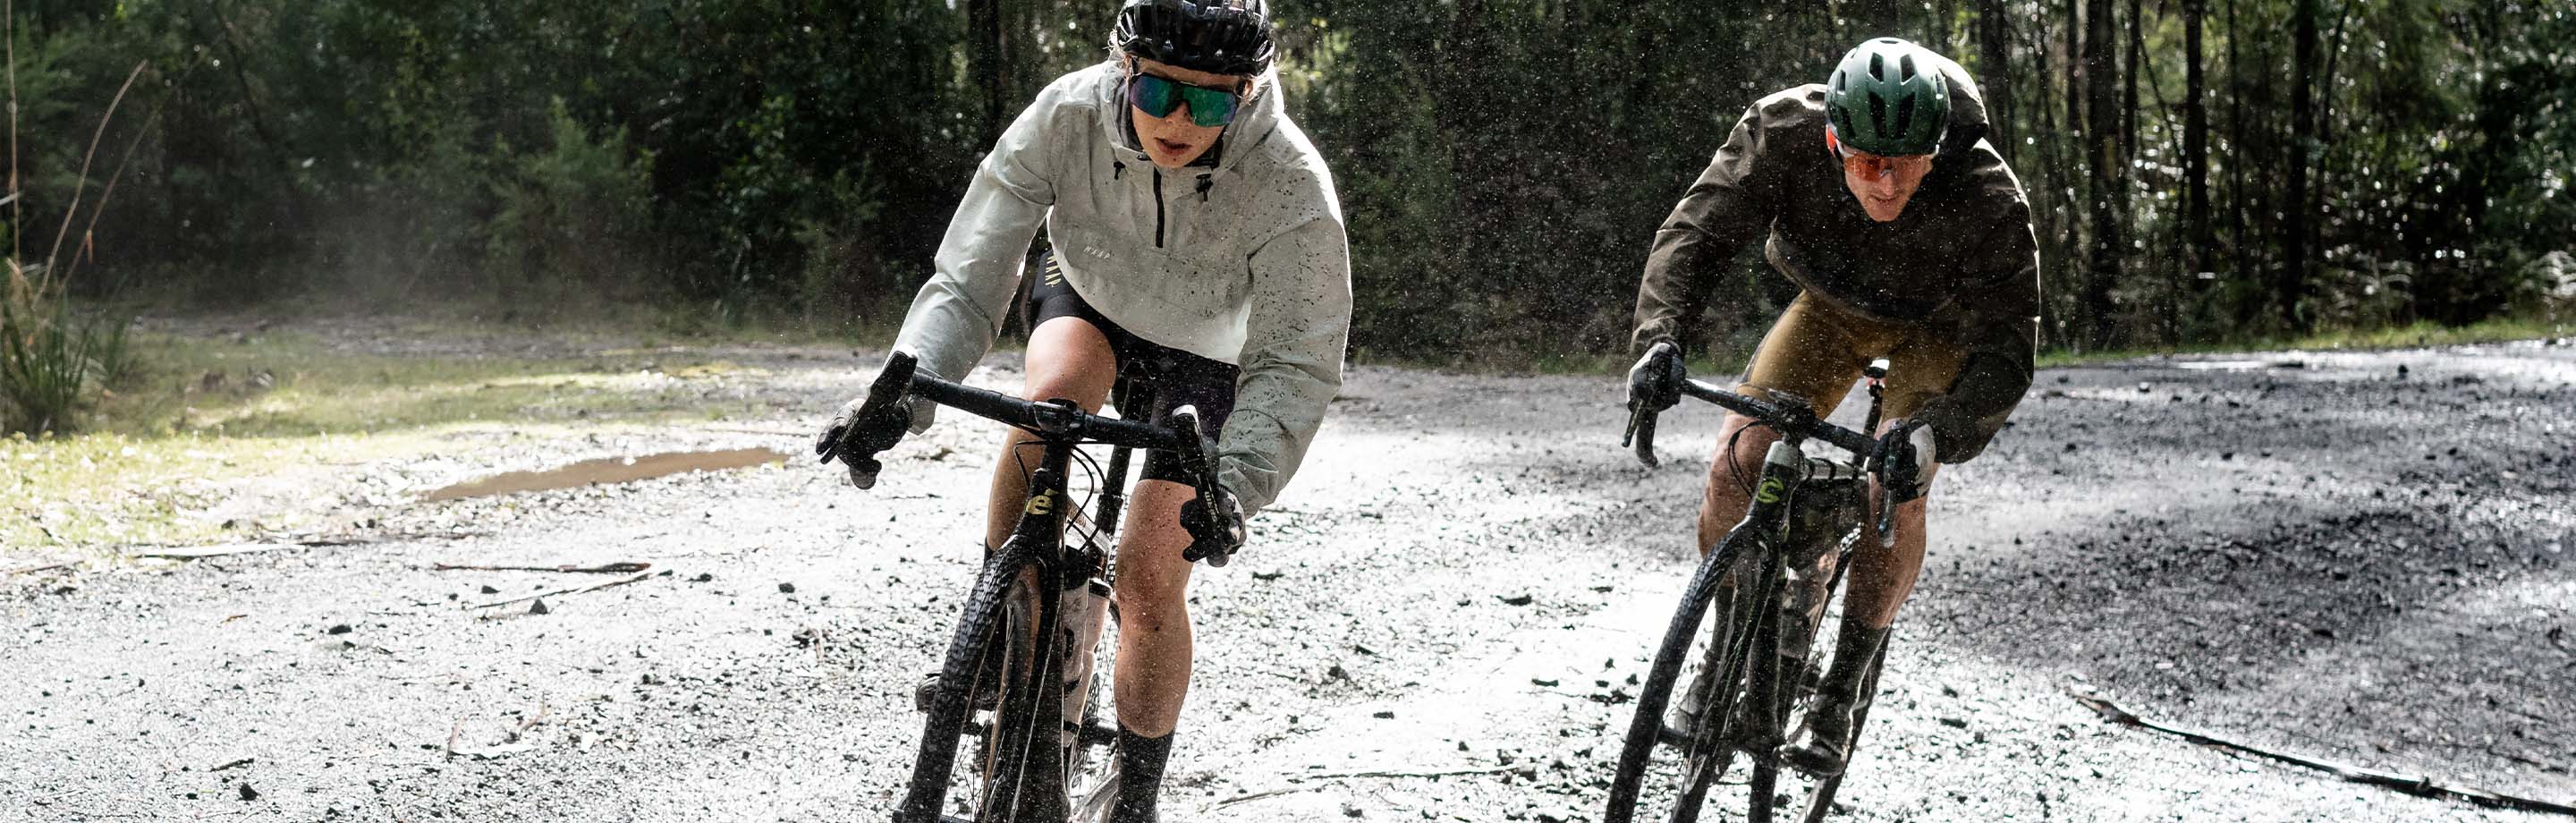 MAAP – jerseys en kleding voor ambitieuze fietsers